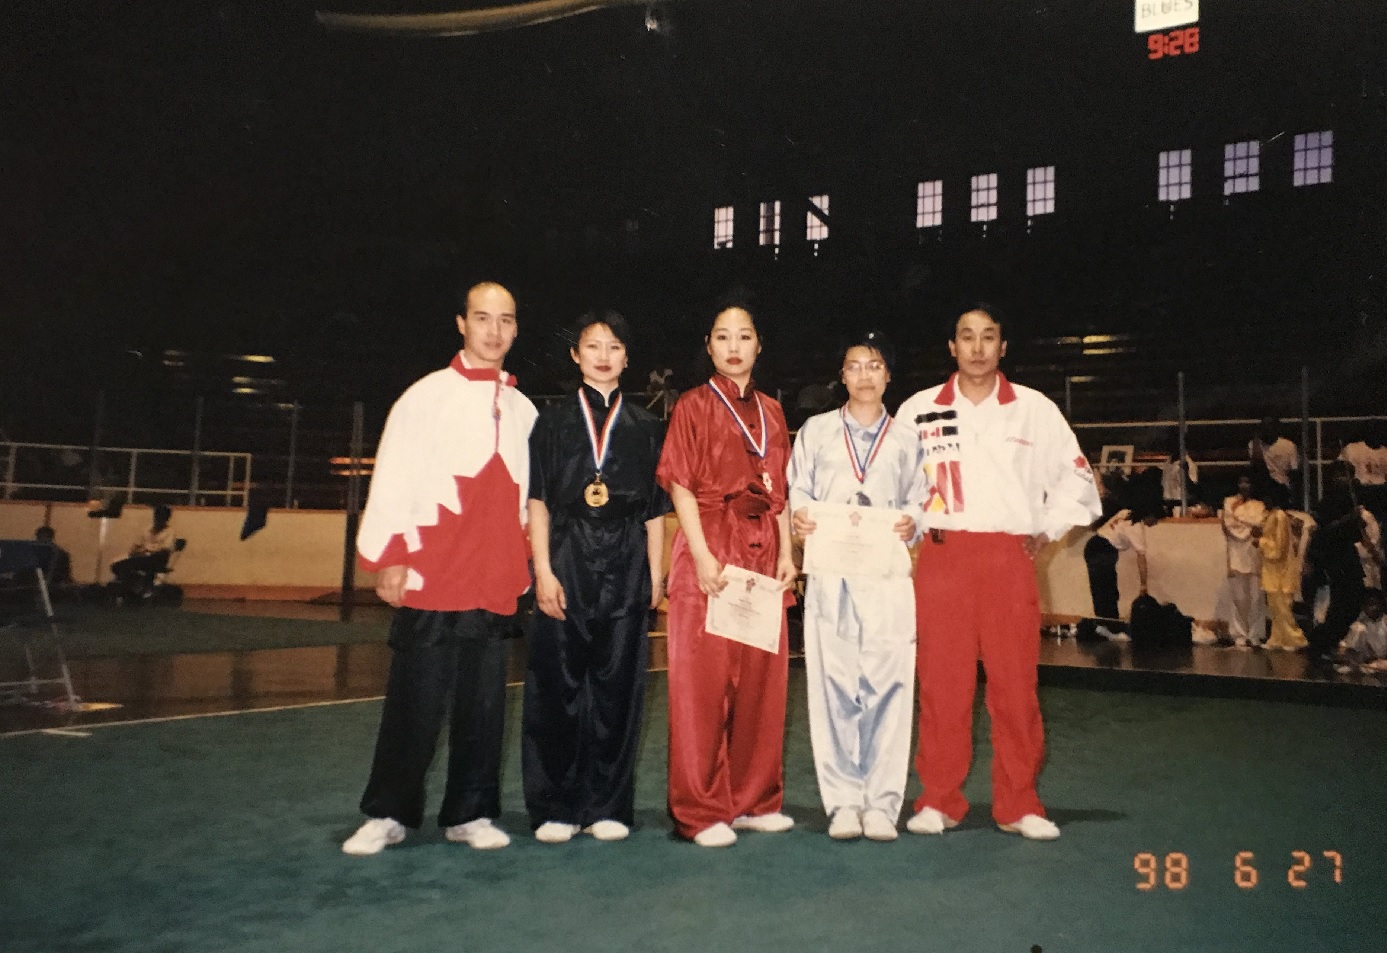 Canadian wushu champs, 1998